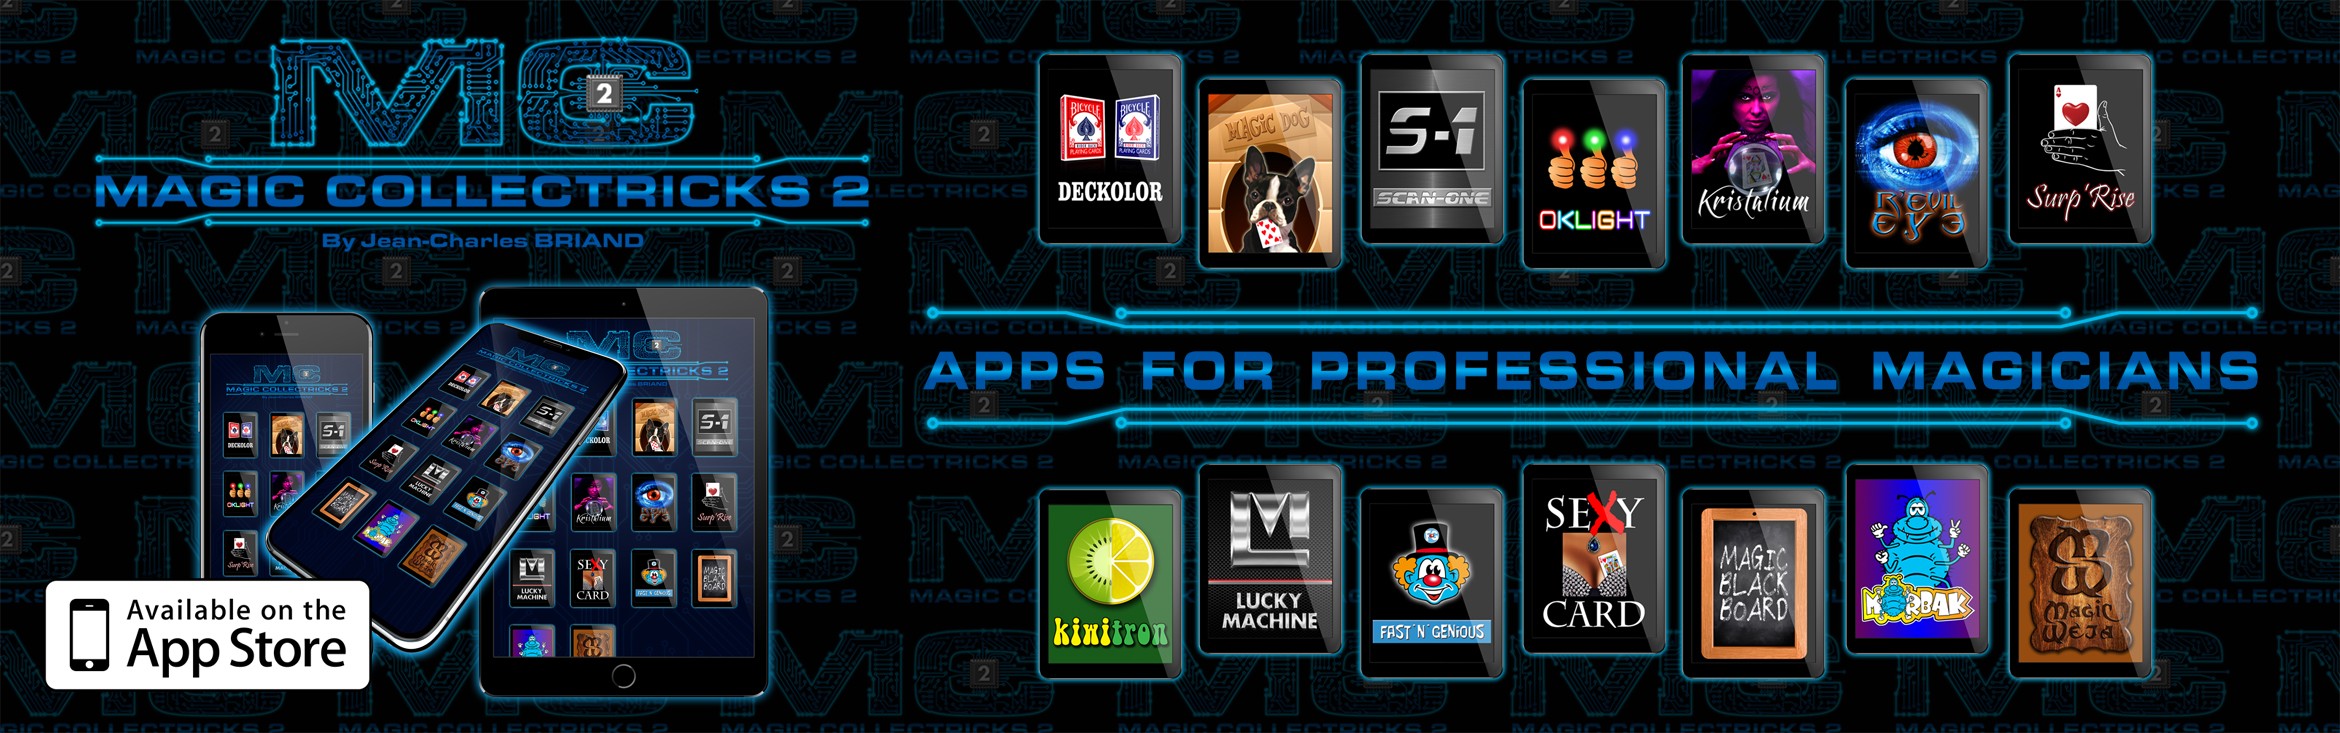 application-pour-magicien-apps-magicians-digital